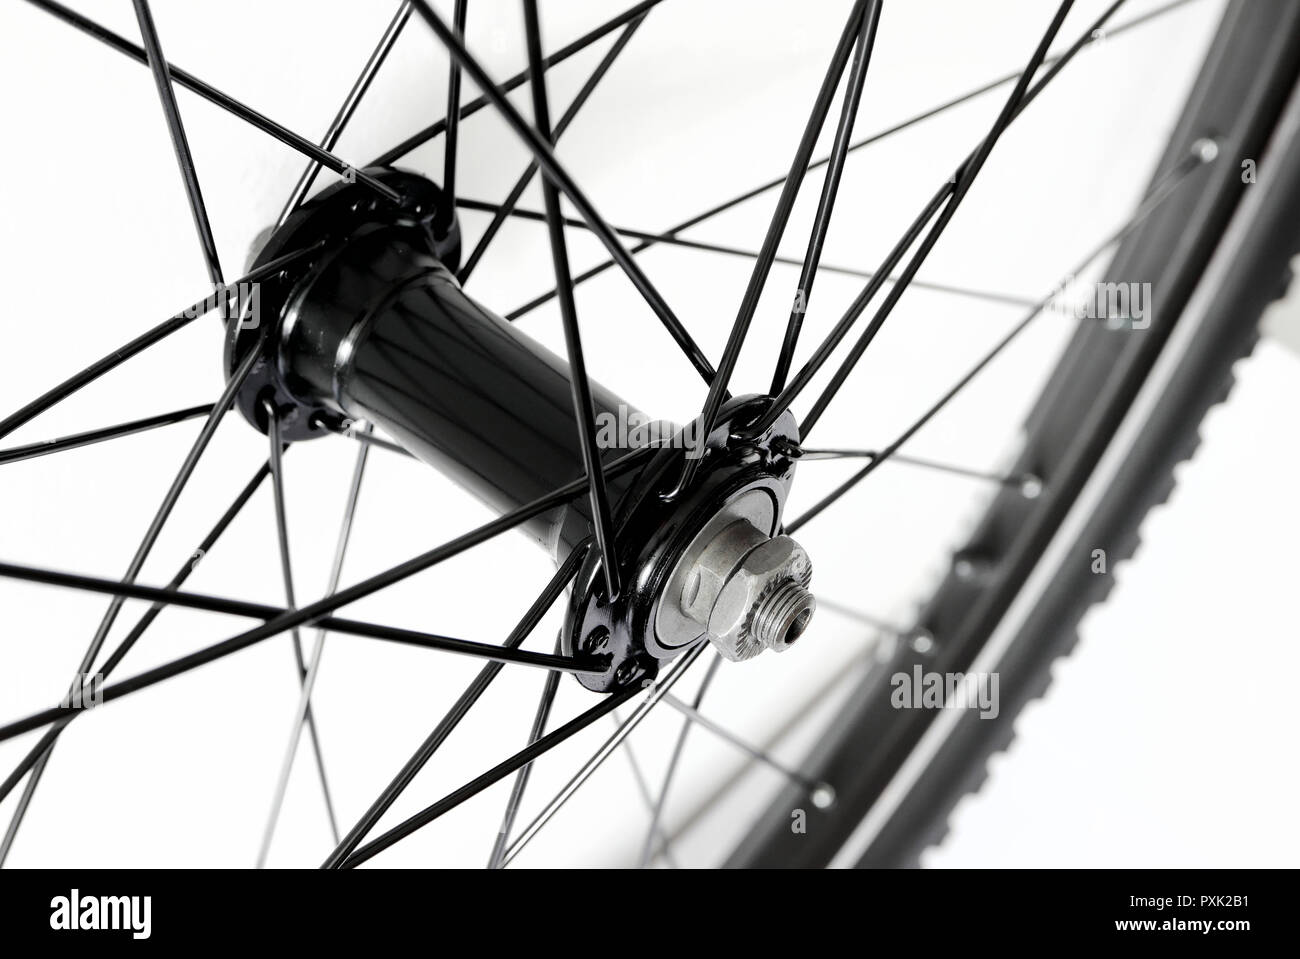 Detail der vorderen Fahrrad Rad, Nabe und Speichen von Mountainbike  Stockfotografie - Alamy